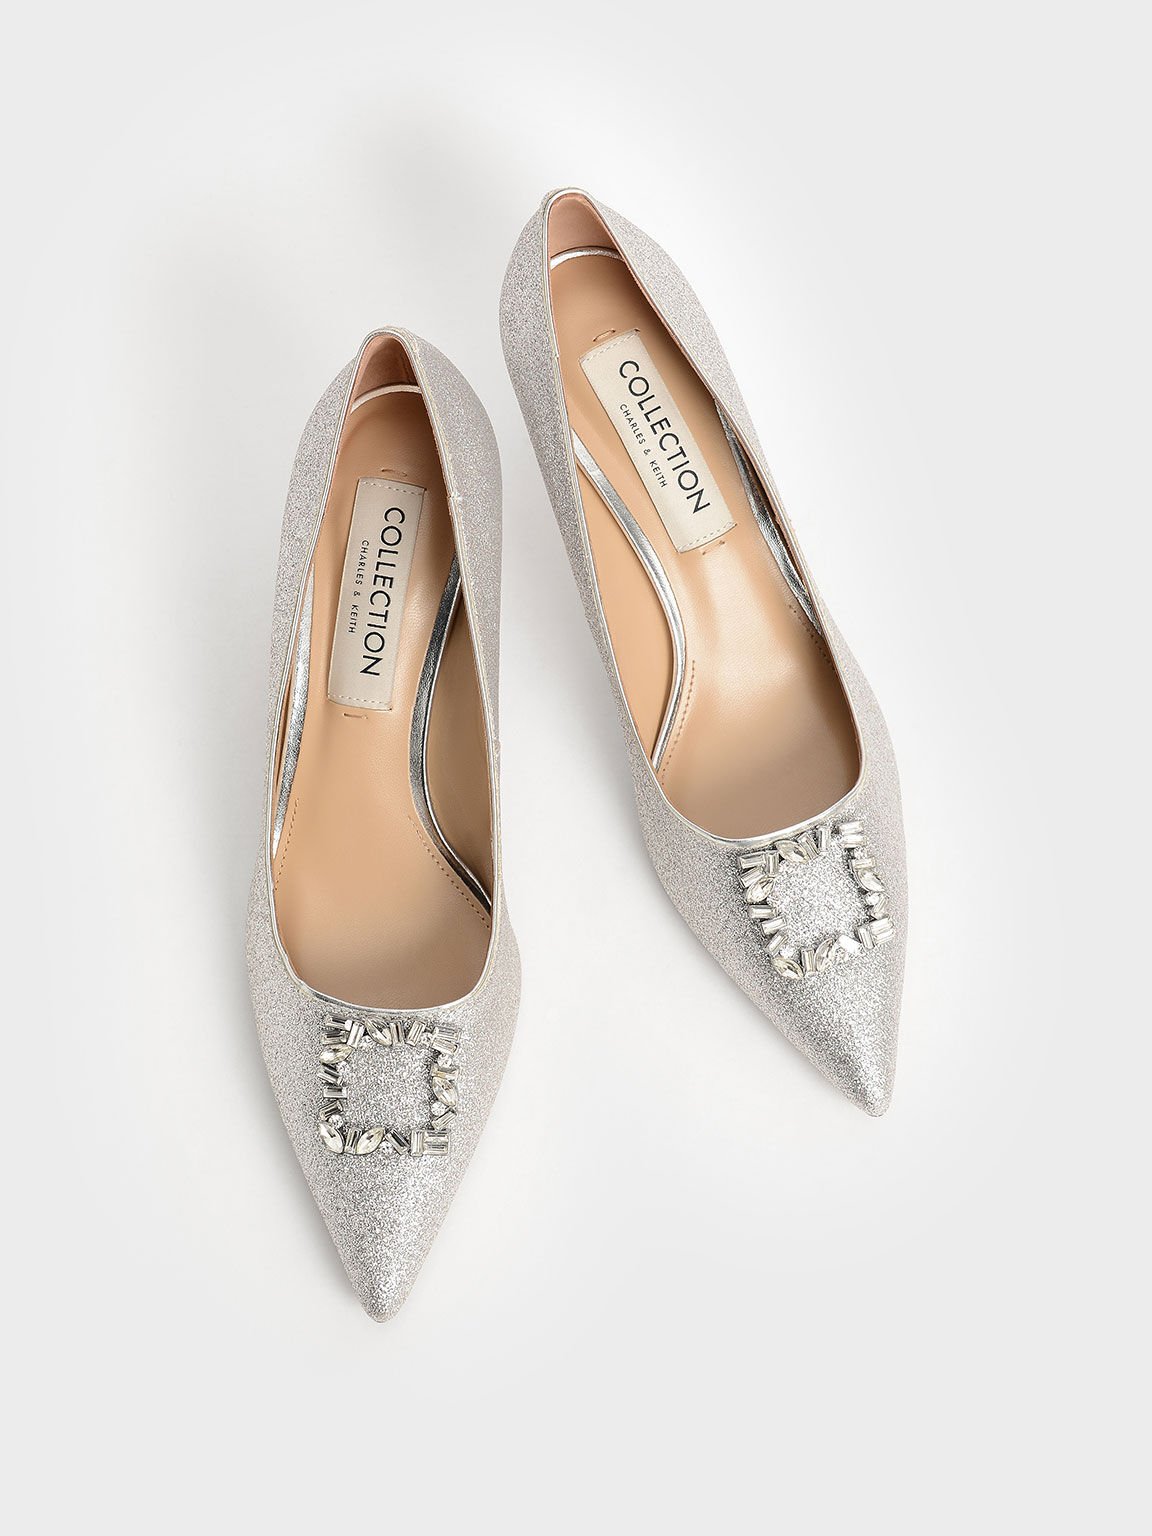 Wedding Collection: Glittered Gem-Embellished Kitten Heel Pumps, Silver, hi-res